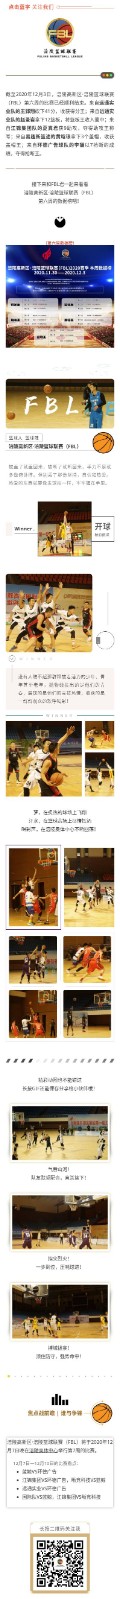 涪陵高新区·涪陵篮球联赛（FBL）2020赛季周报（11.30-12.3）